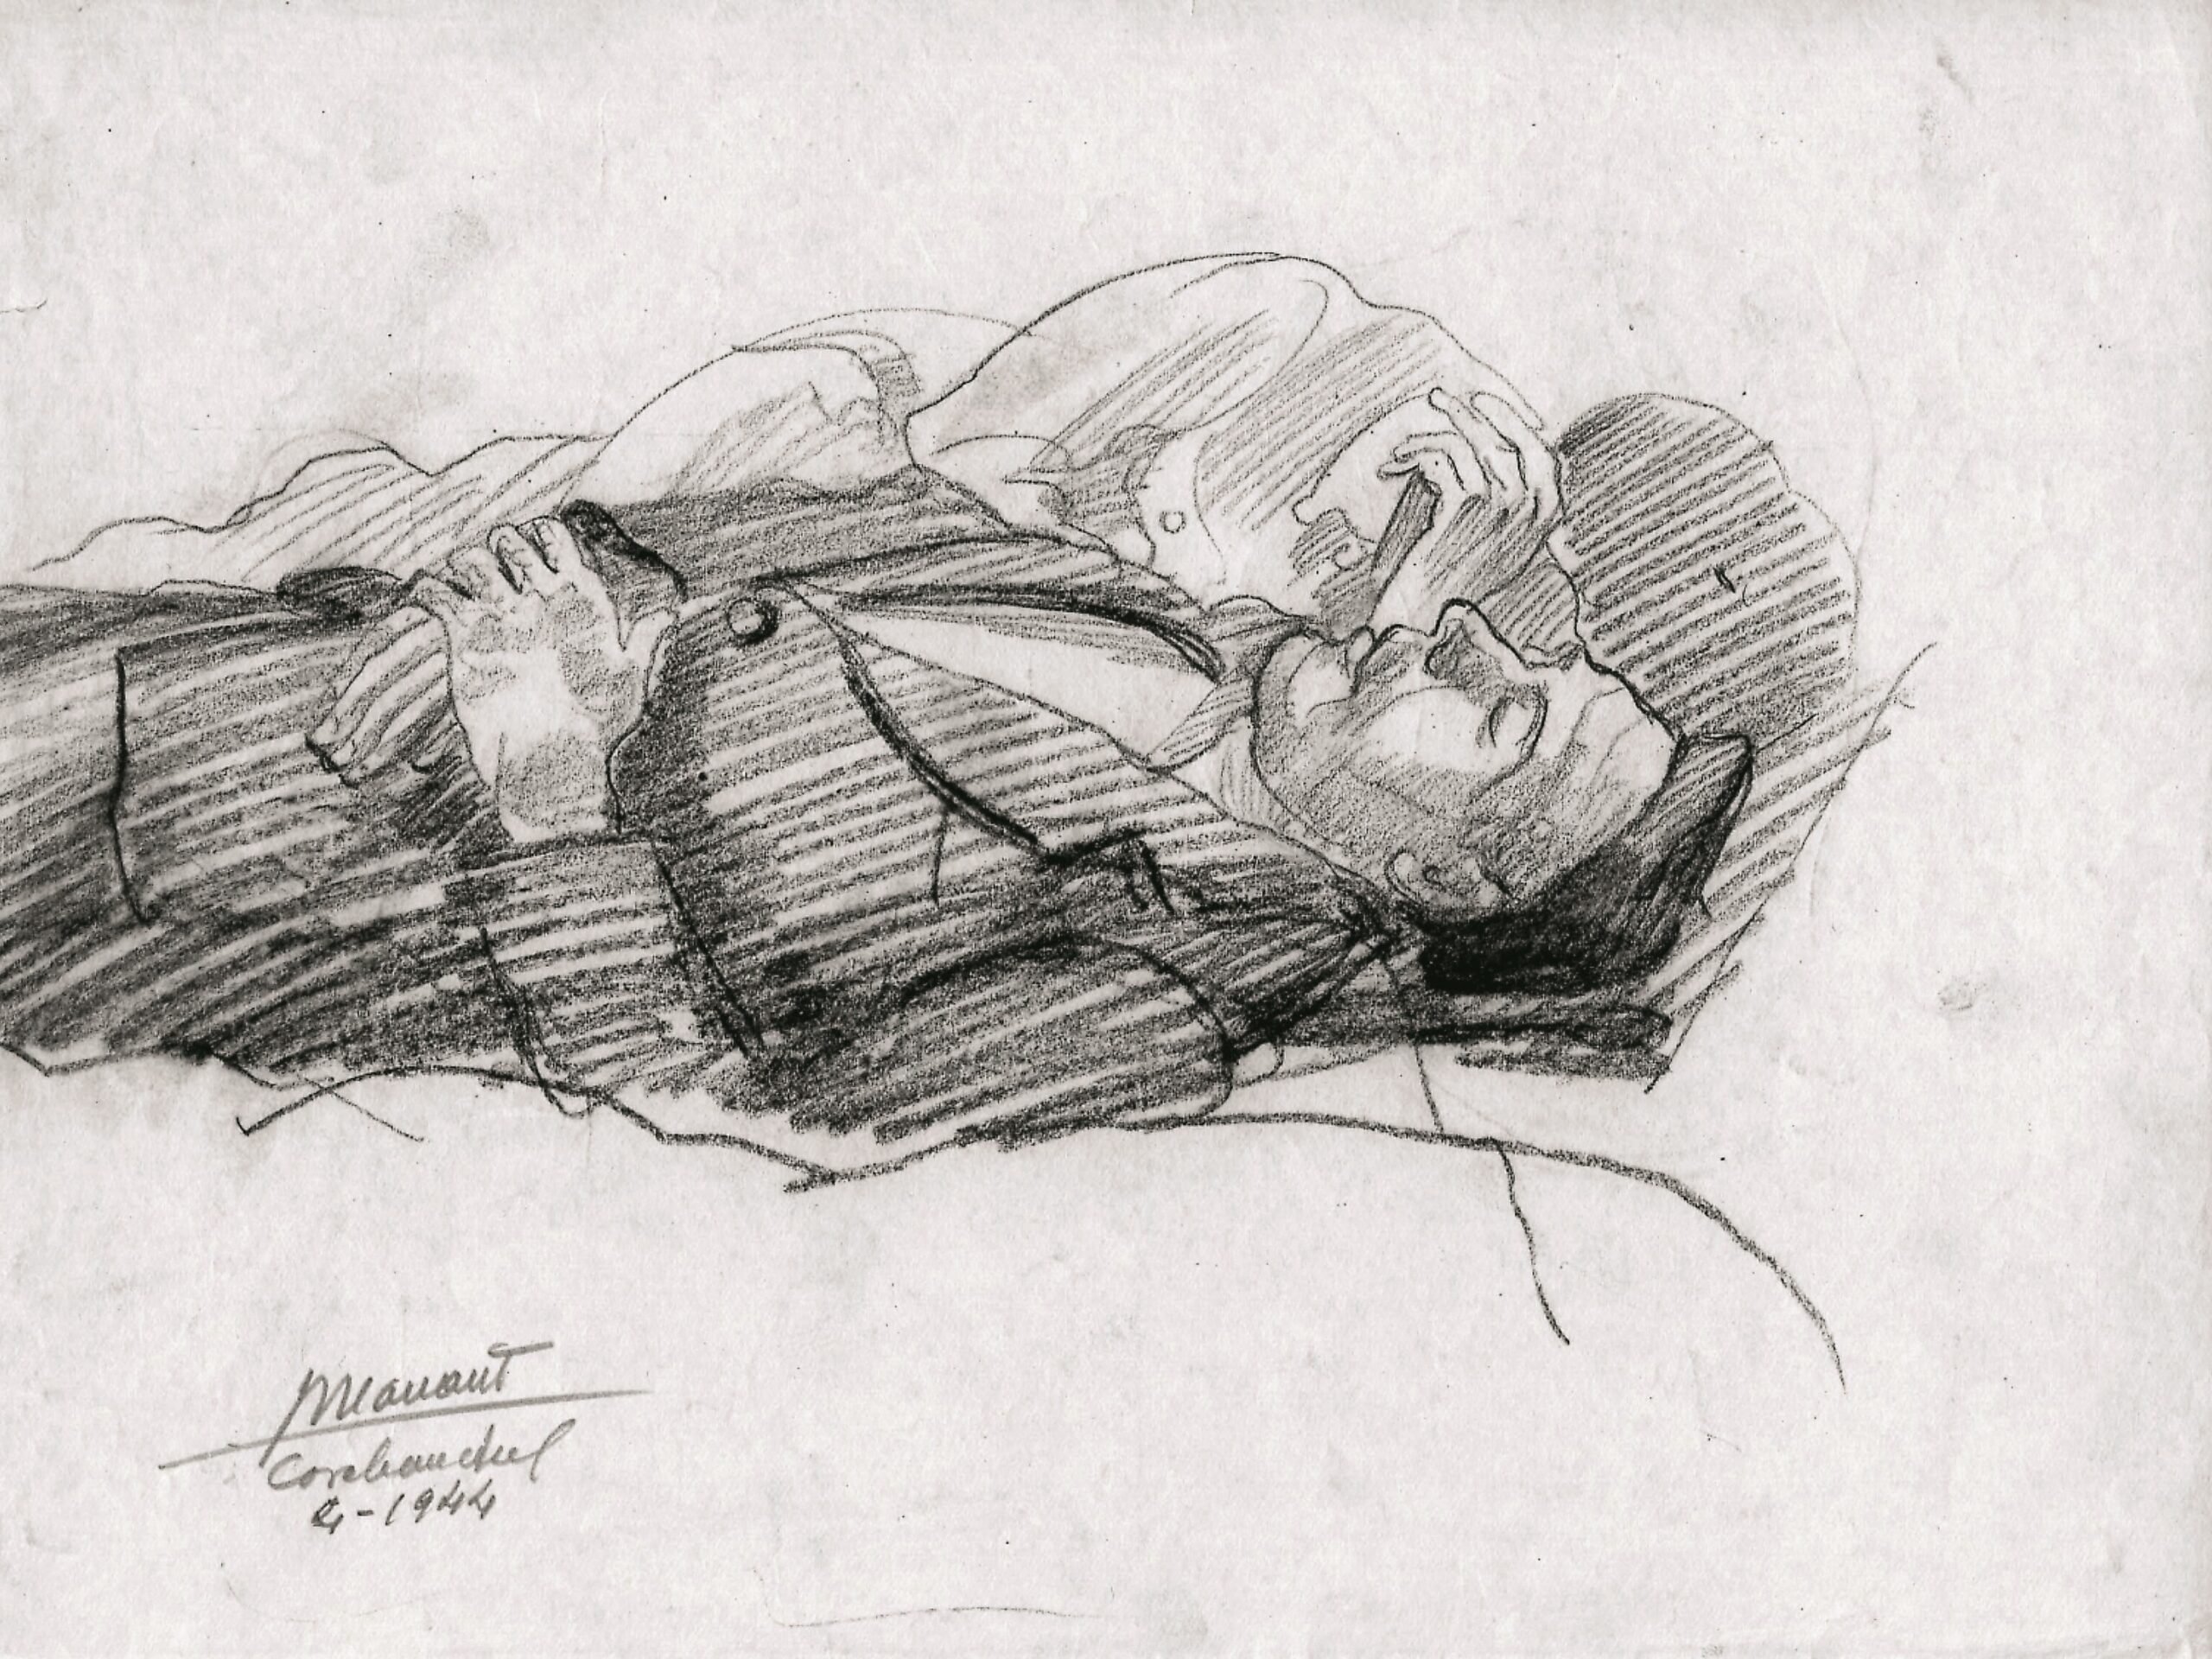 Dibujo de José Manaut titulado Uno tumbado boca arriba, Carabanchel, 1944. Carboncillo sobre papel.